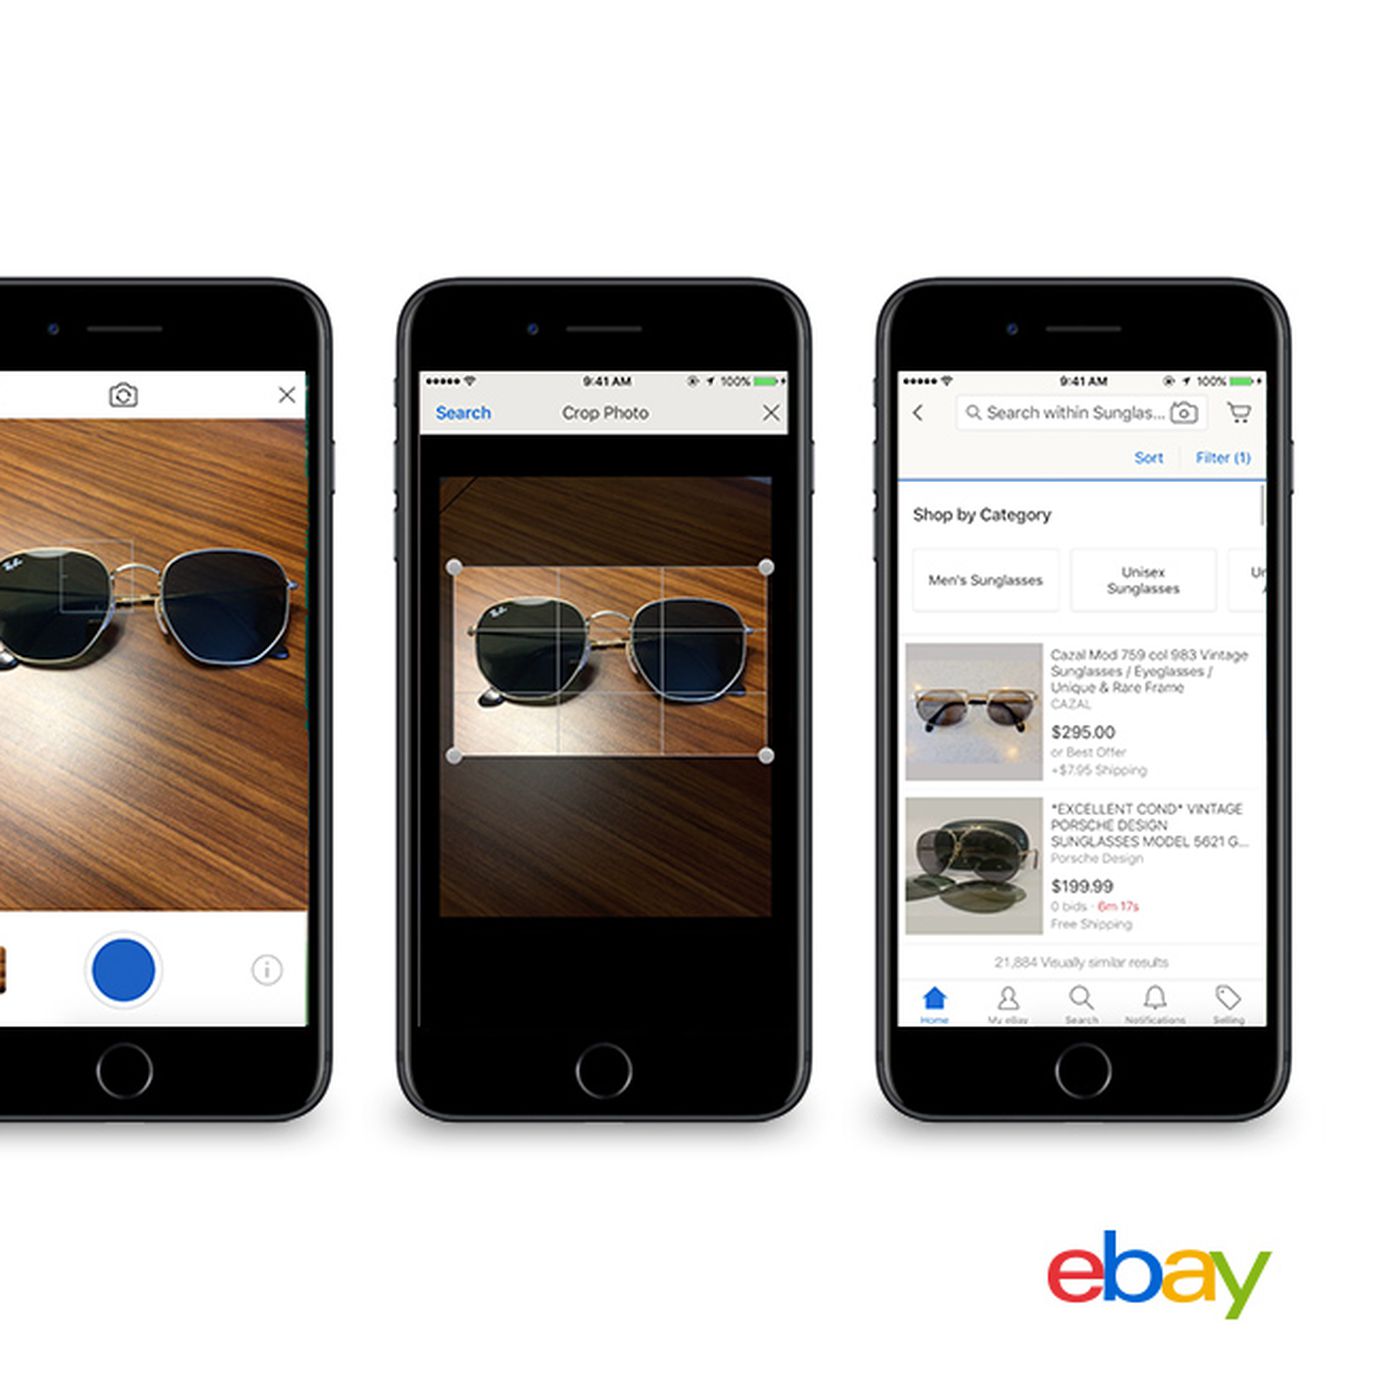 Deko Shop Online Frisch Ebay Will soon Let You Shop Using Photos the Verge